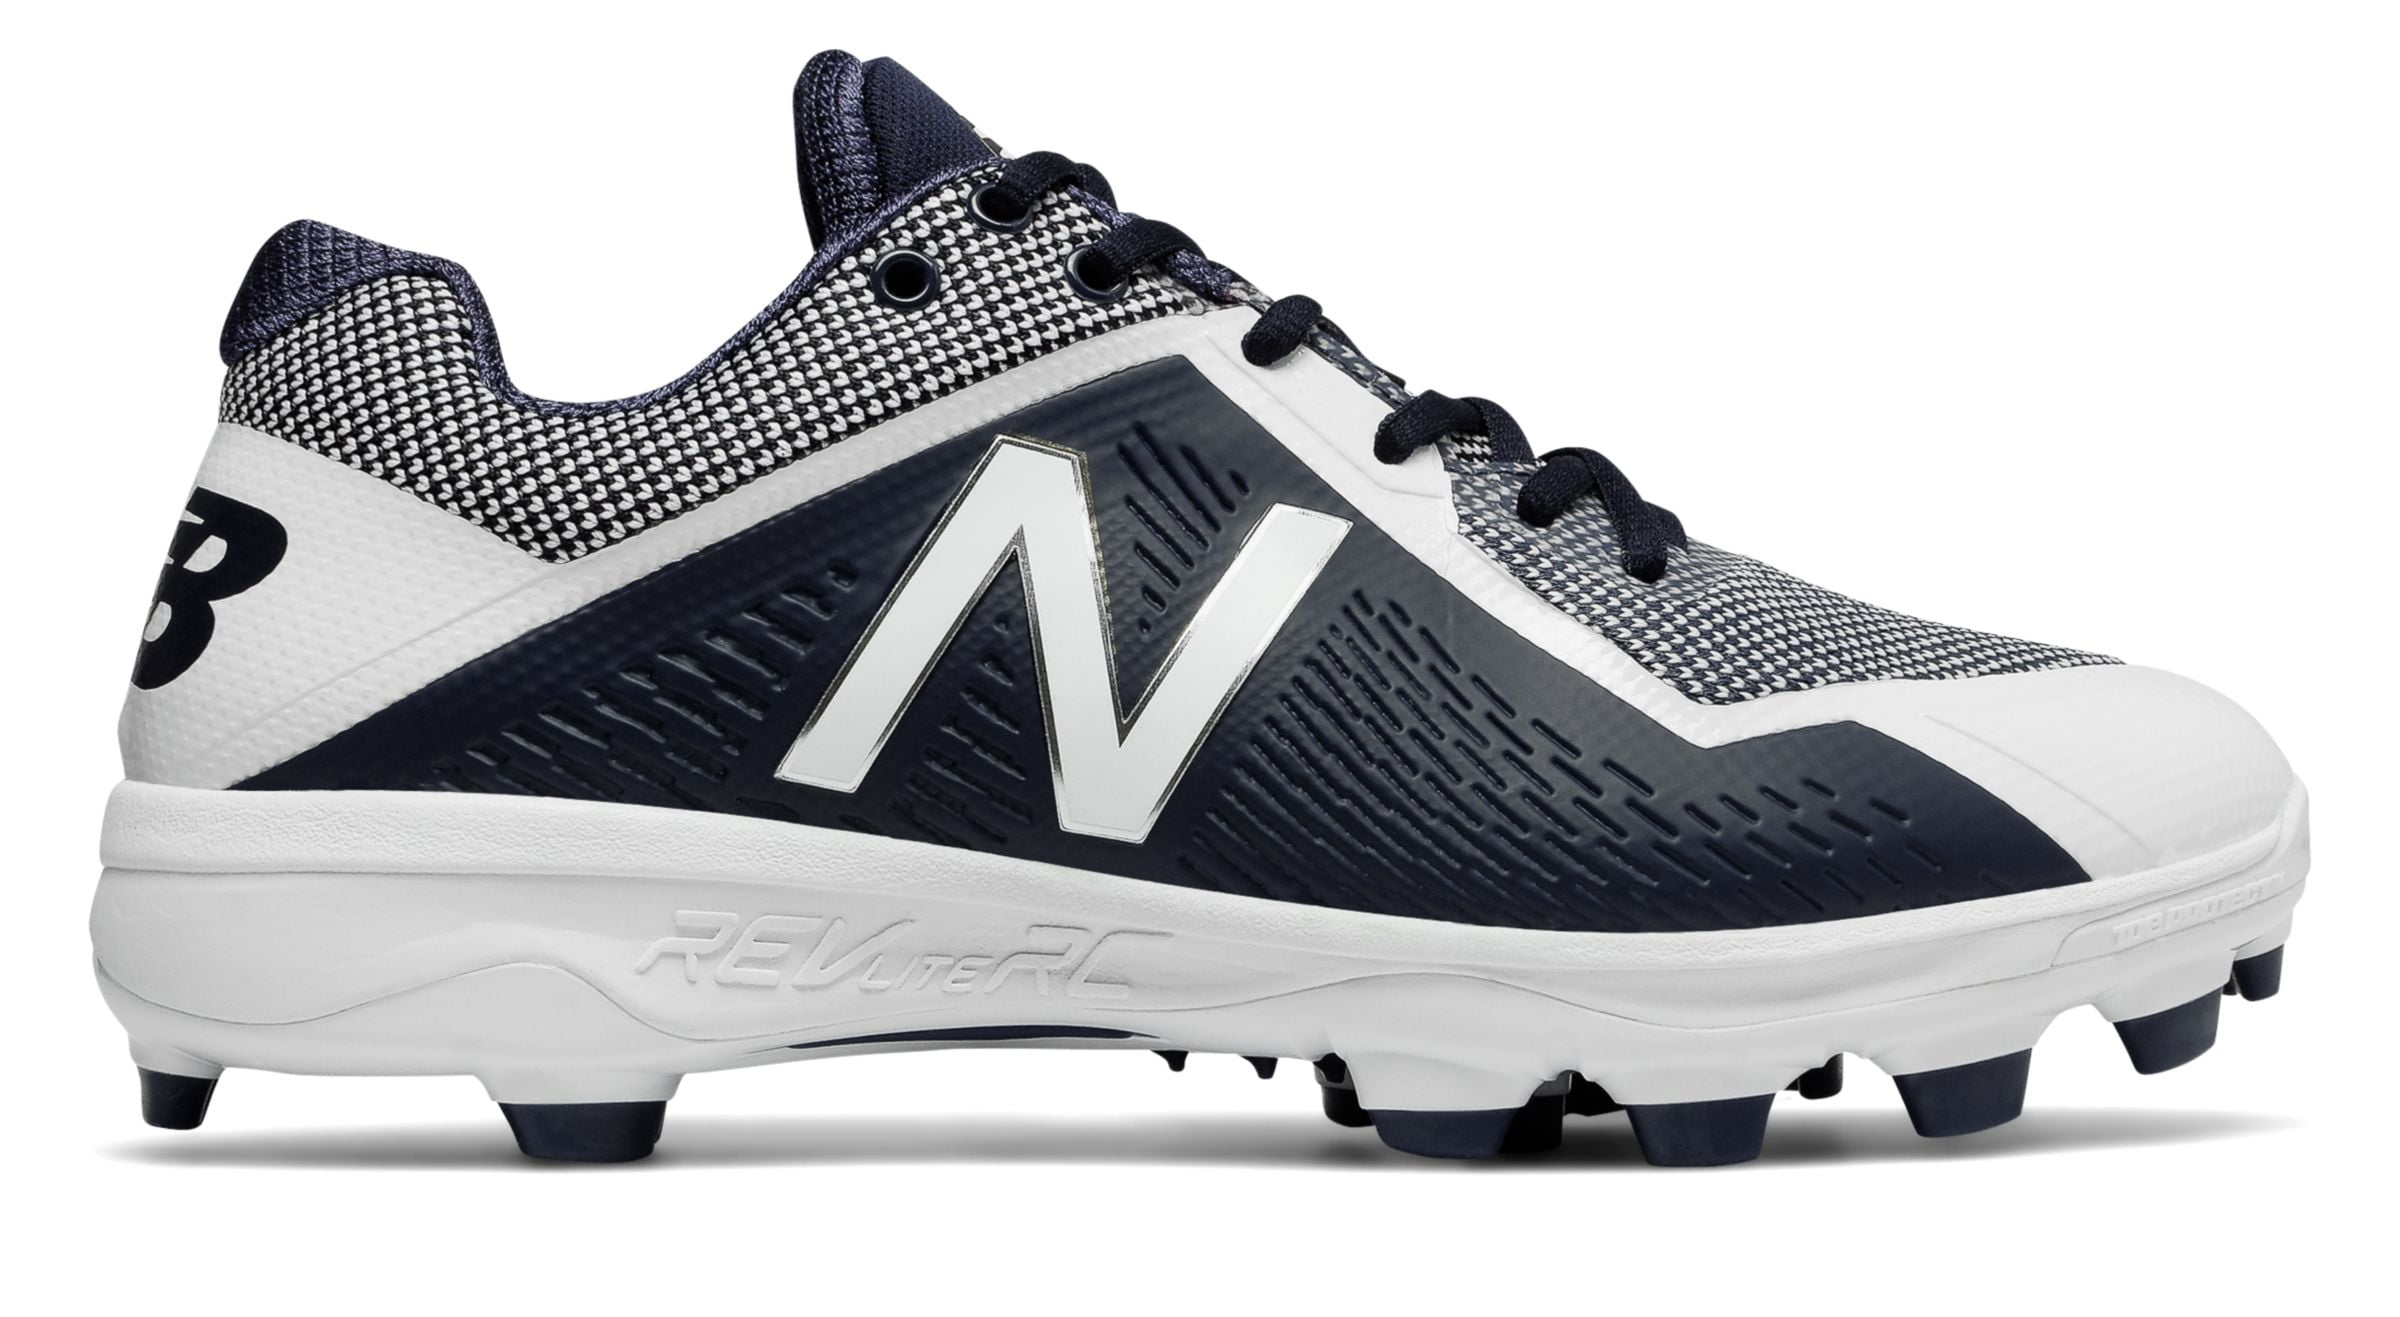 new balance men's 4040v4 baseball shoe